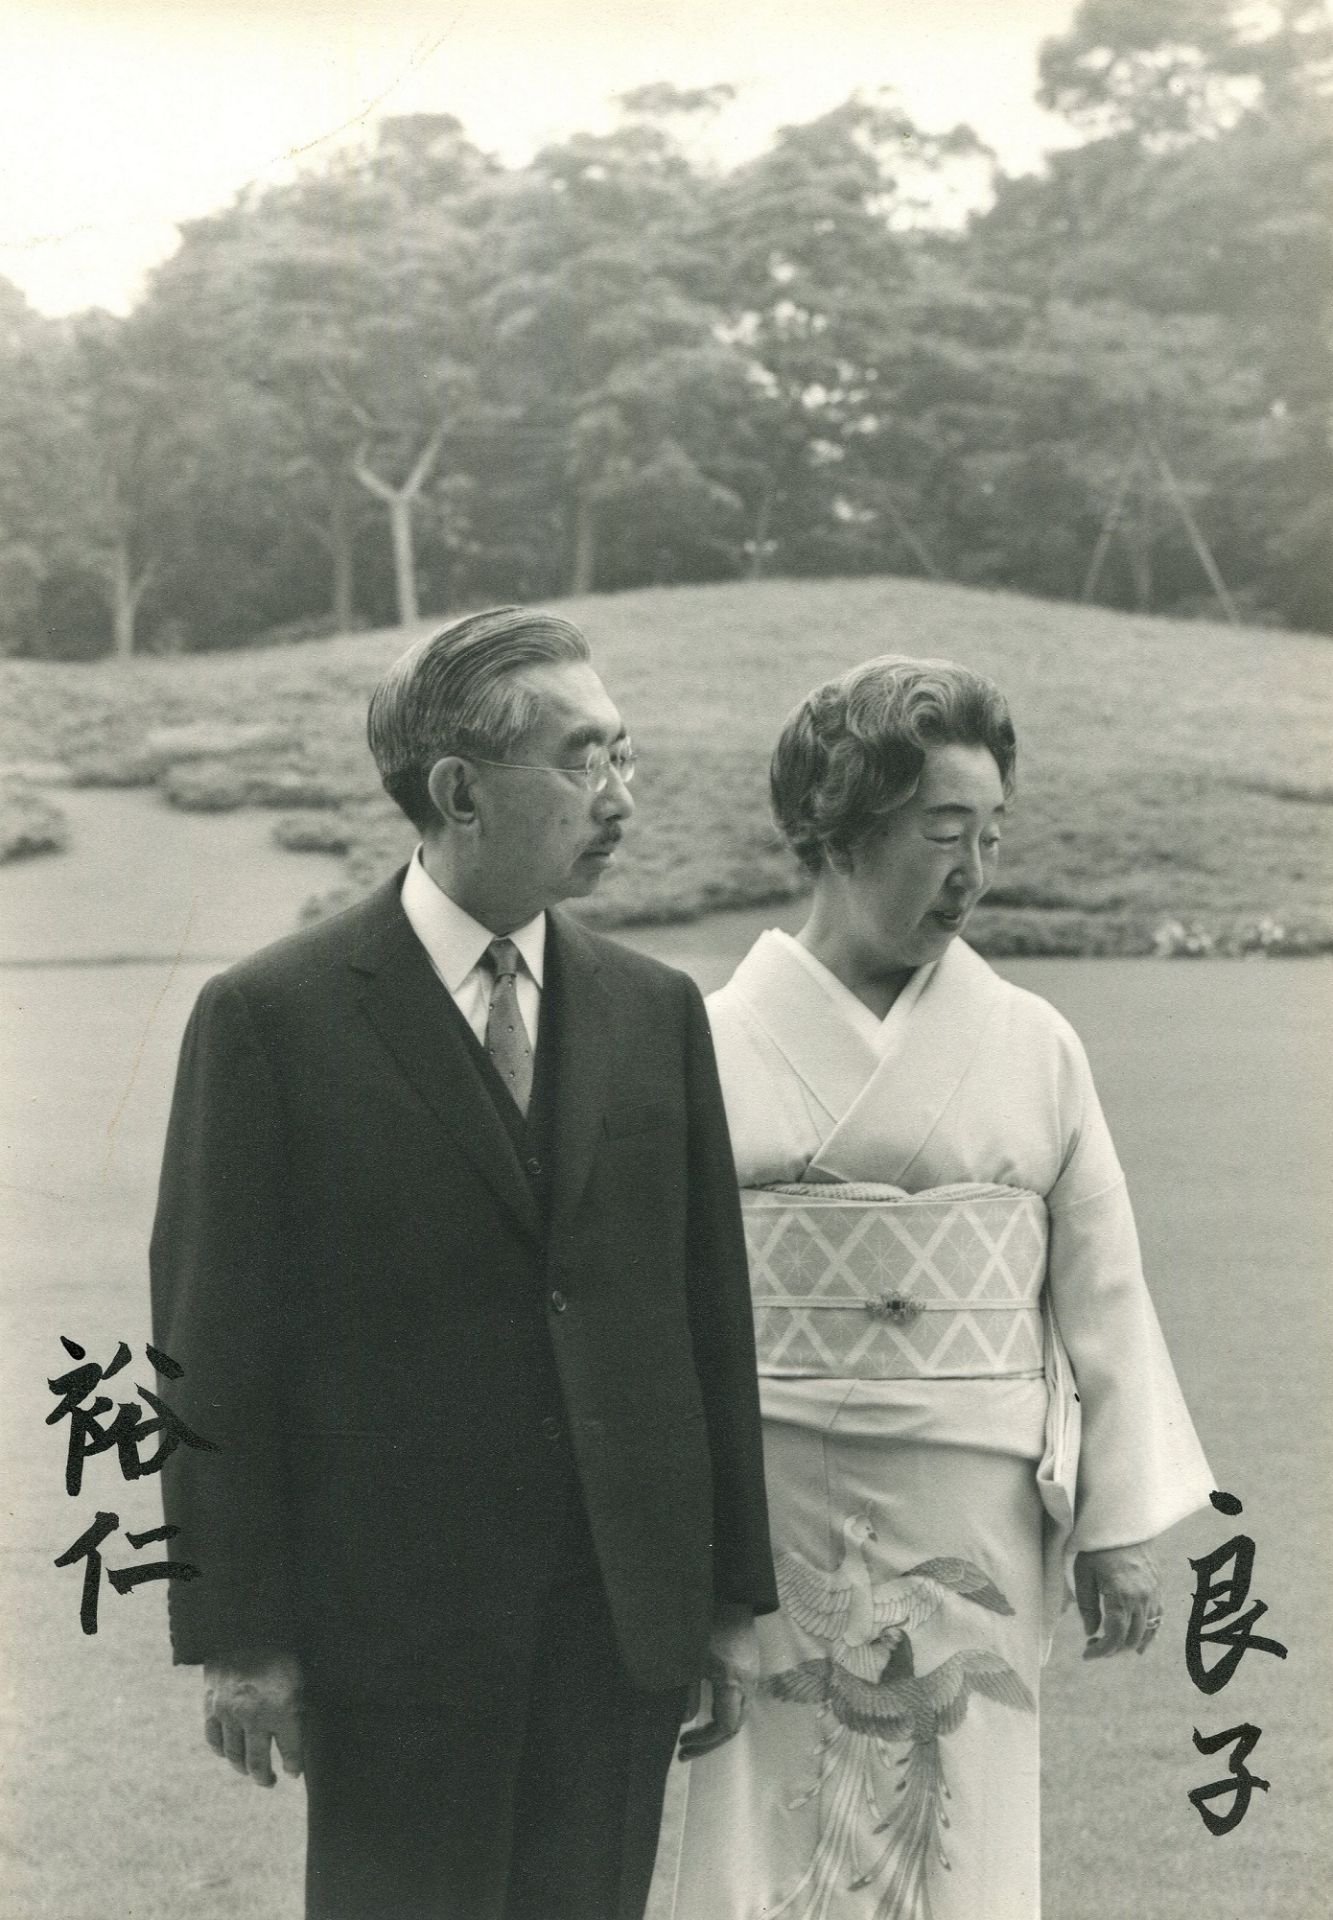 HIROHITO & KOJUN: Hirohito (1901-1989) Emperor Showa of Japan 1926-89,